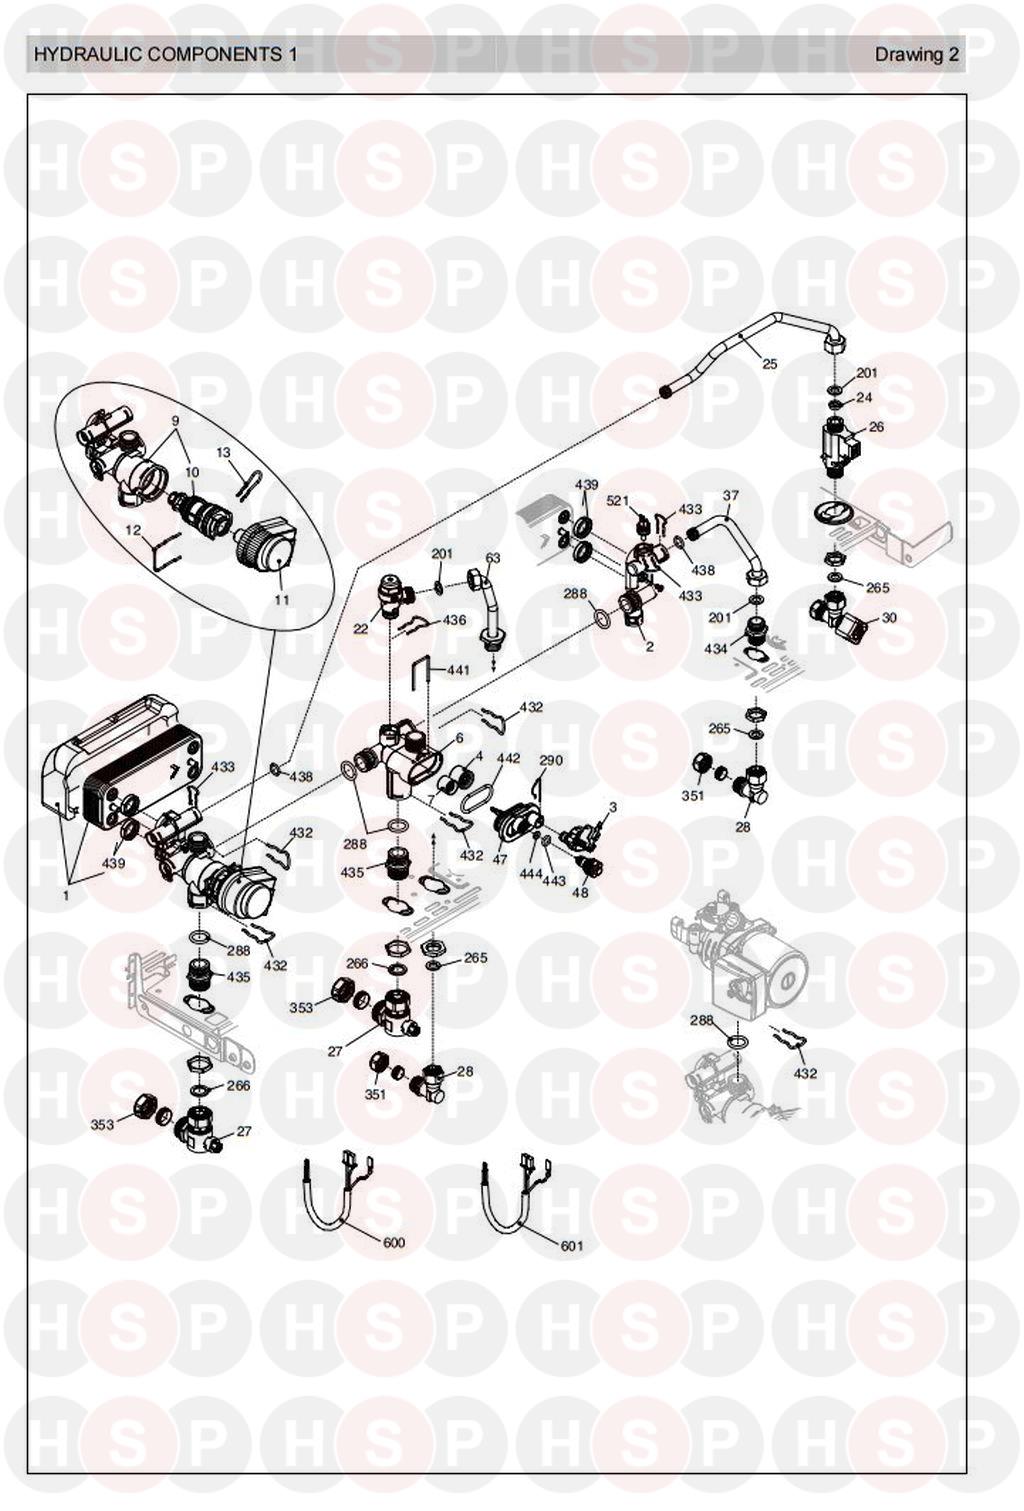 Hydraulics 1 diagram for Vokera Sabre 25 HE Plus (Old Version Pre 2007) Rev 2 (03/07)